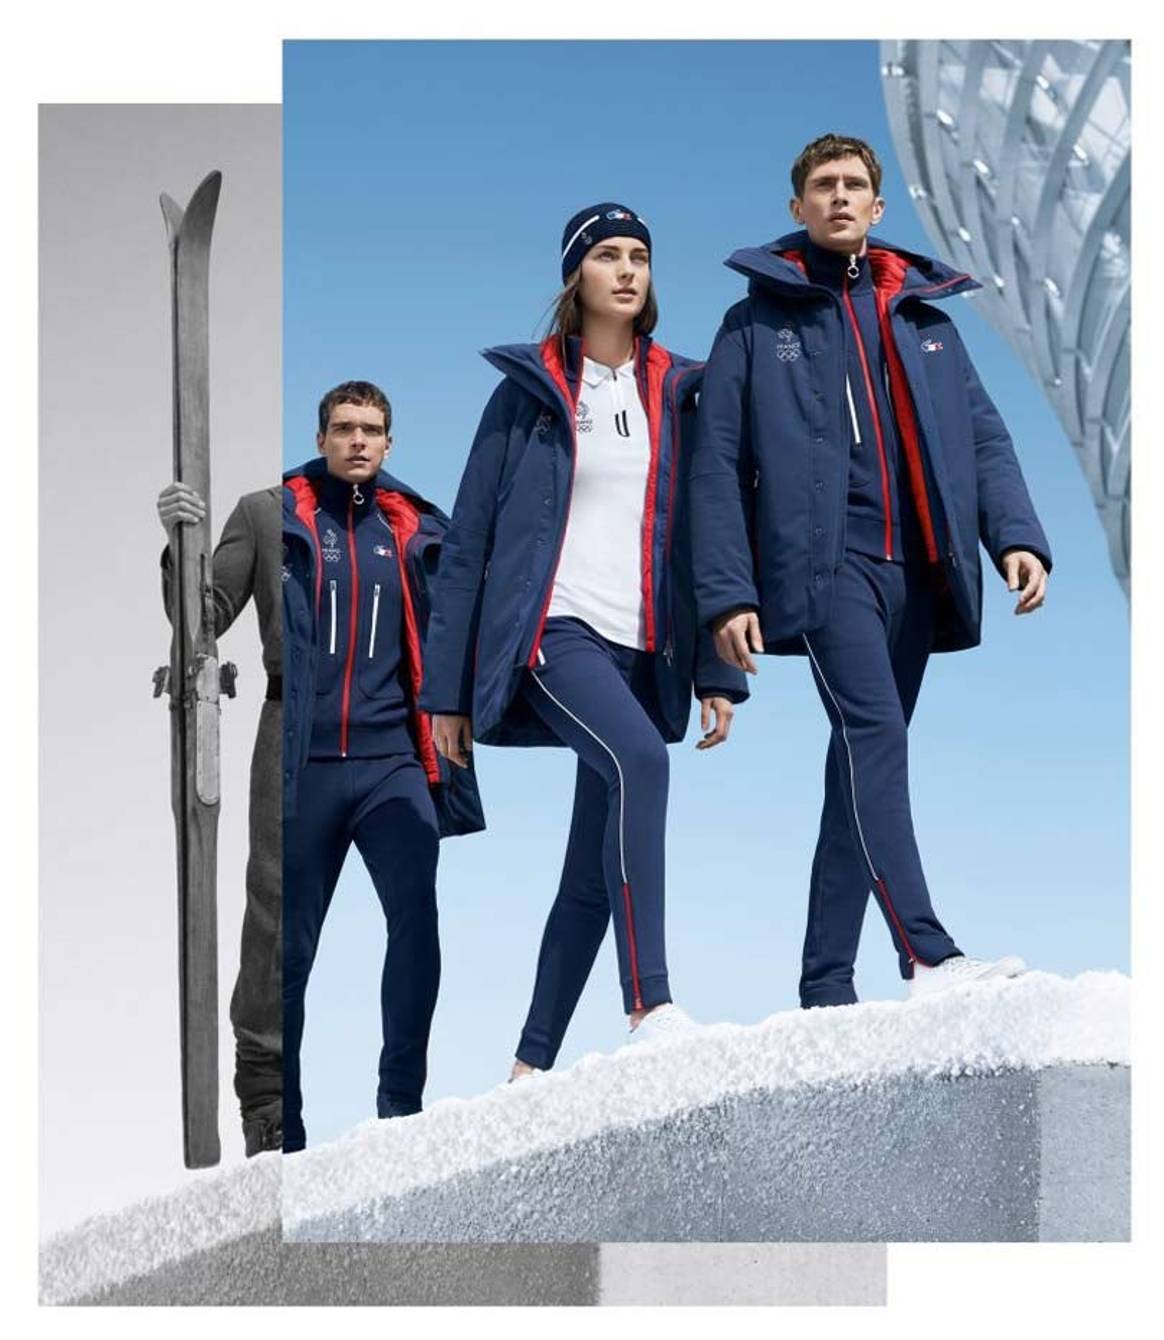 Dit dragen de Olympische atleten tijdens de Winterspelen in Pyeongchang